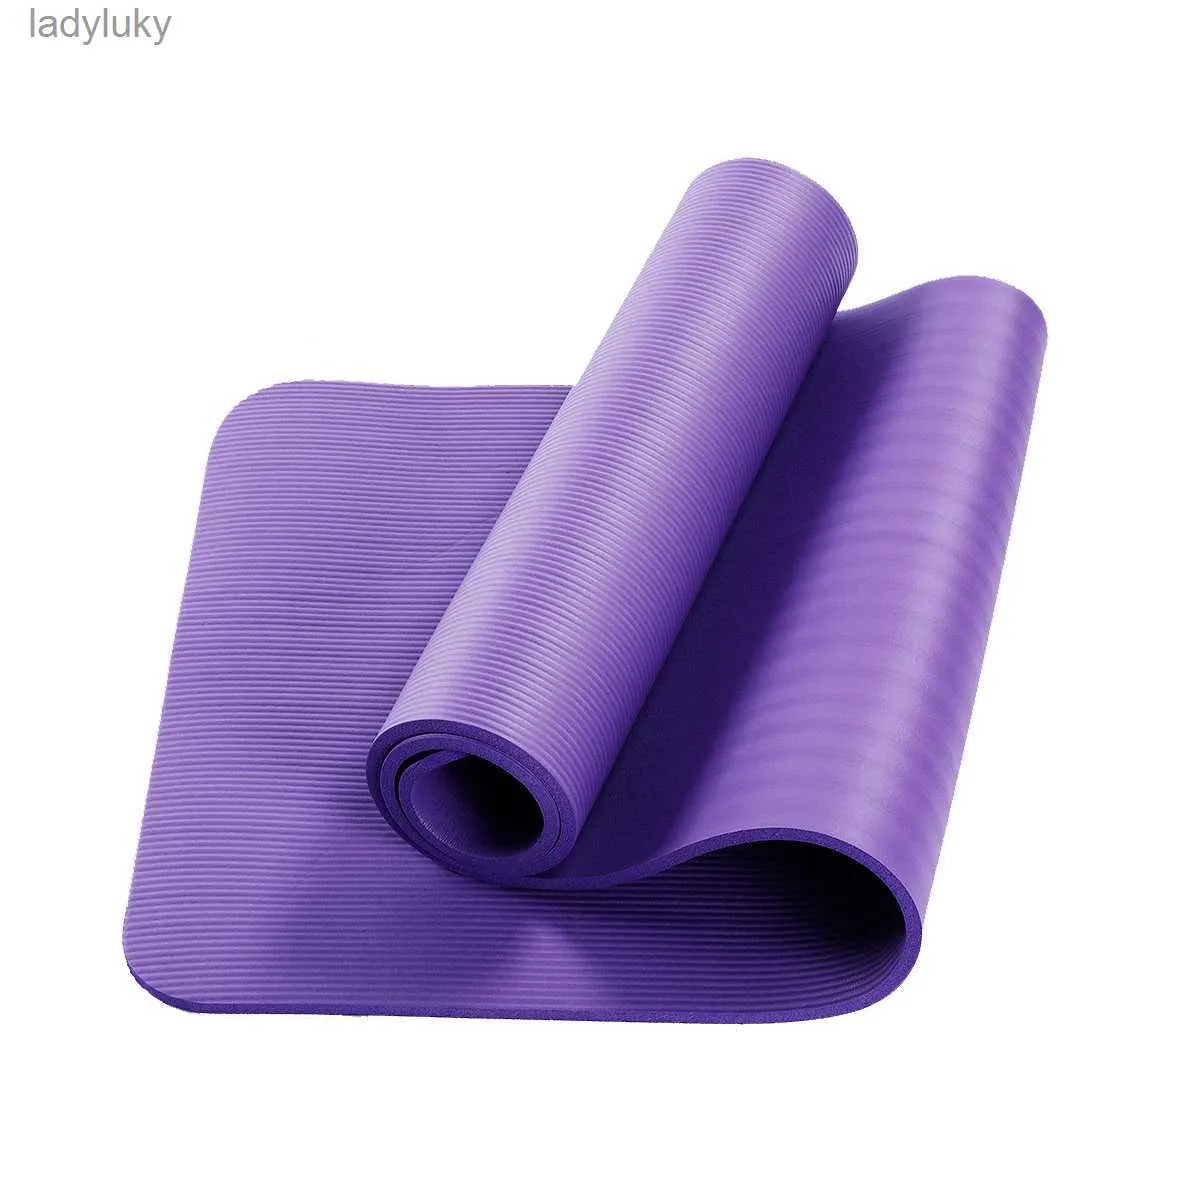 Tapis de Yoga NBR 10MM tapis de Yoga tapis de Yoga Pilates tapis d'équilibre de gymnastique tapis de Fitness tapis de danse antidérapants 900*600*10MML240118